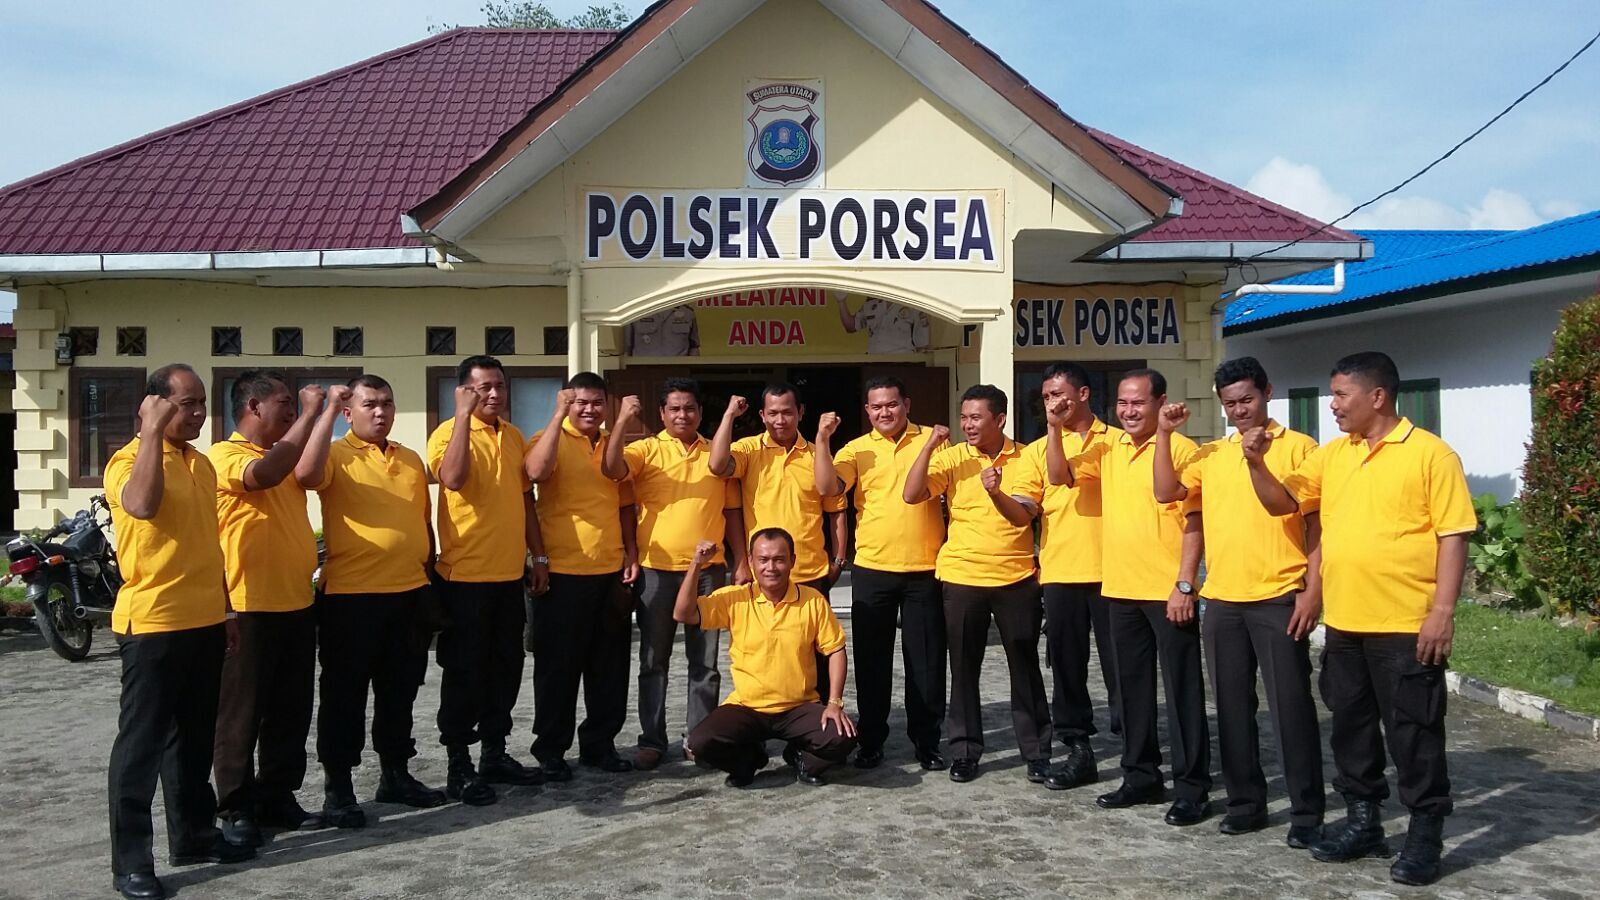 Polsek Porsea Photo